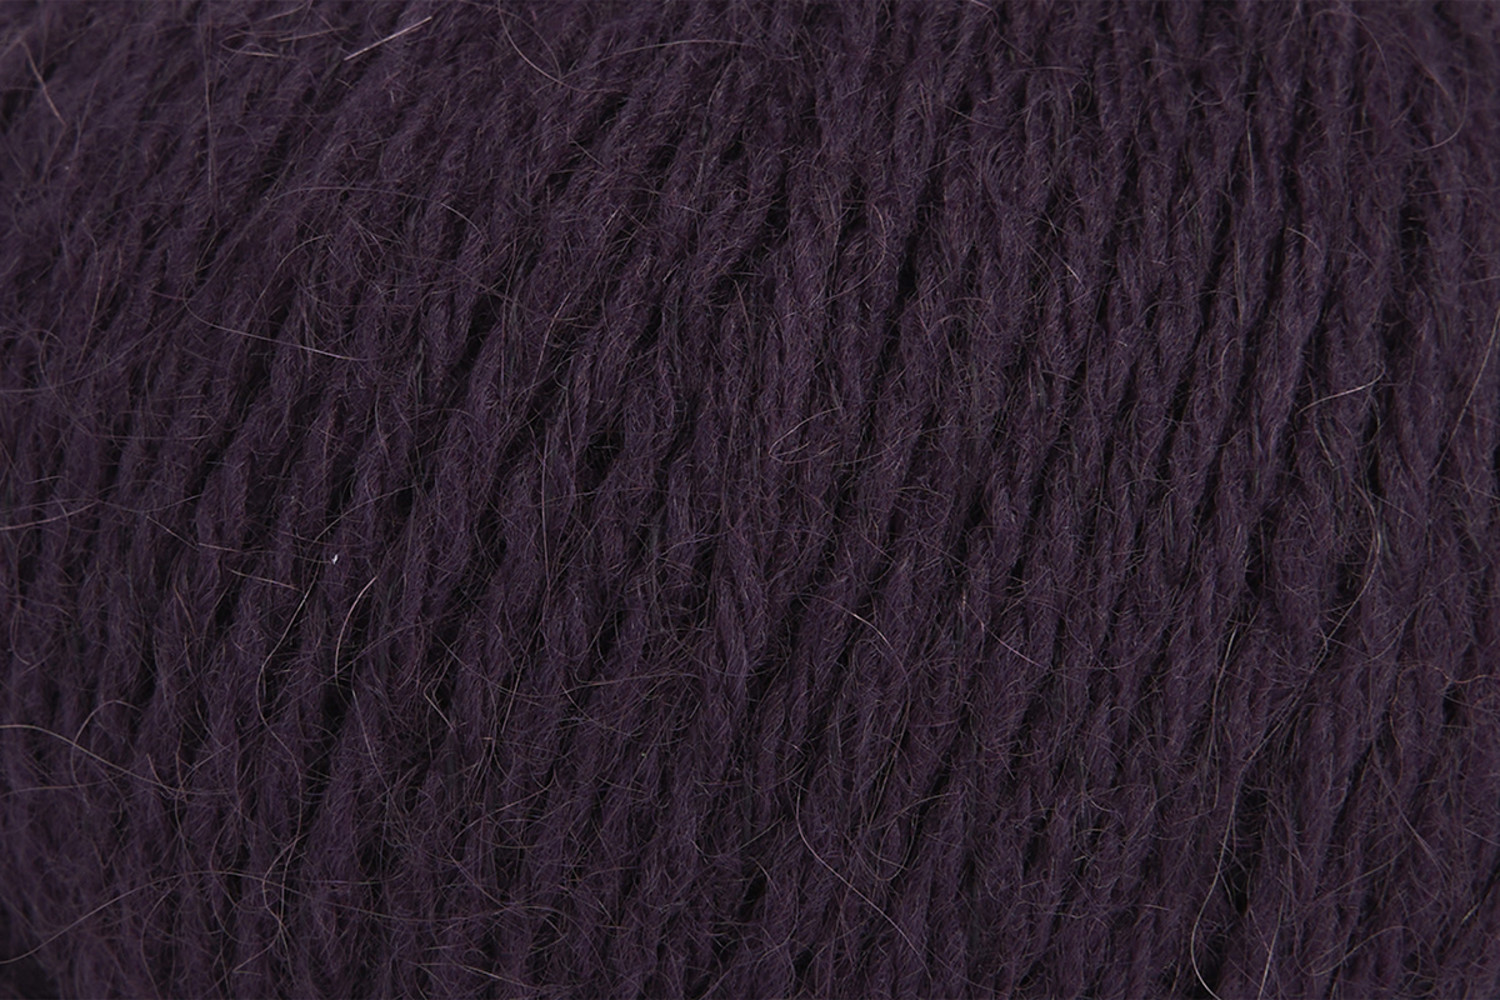 Hydrangea Purple Mohair Yarn Fingering Weight